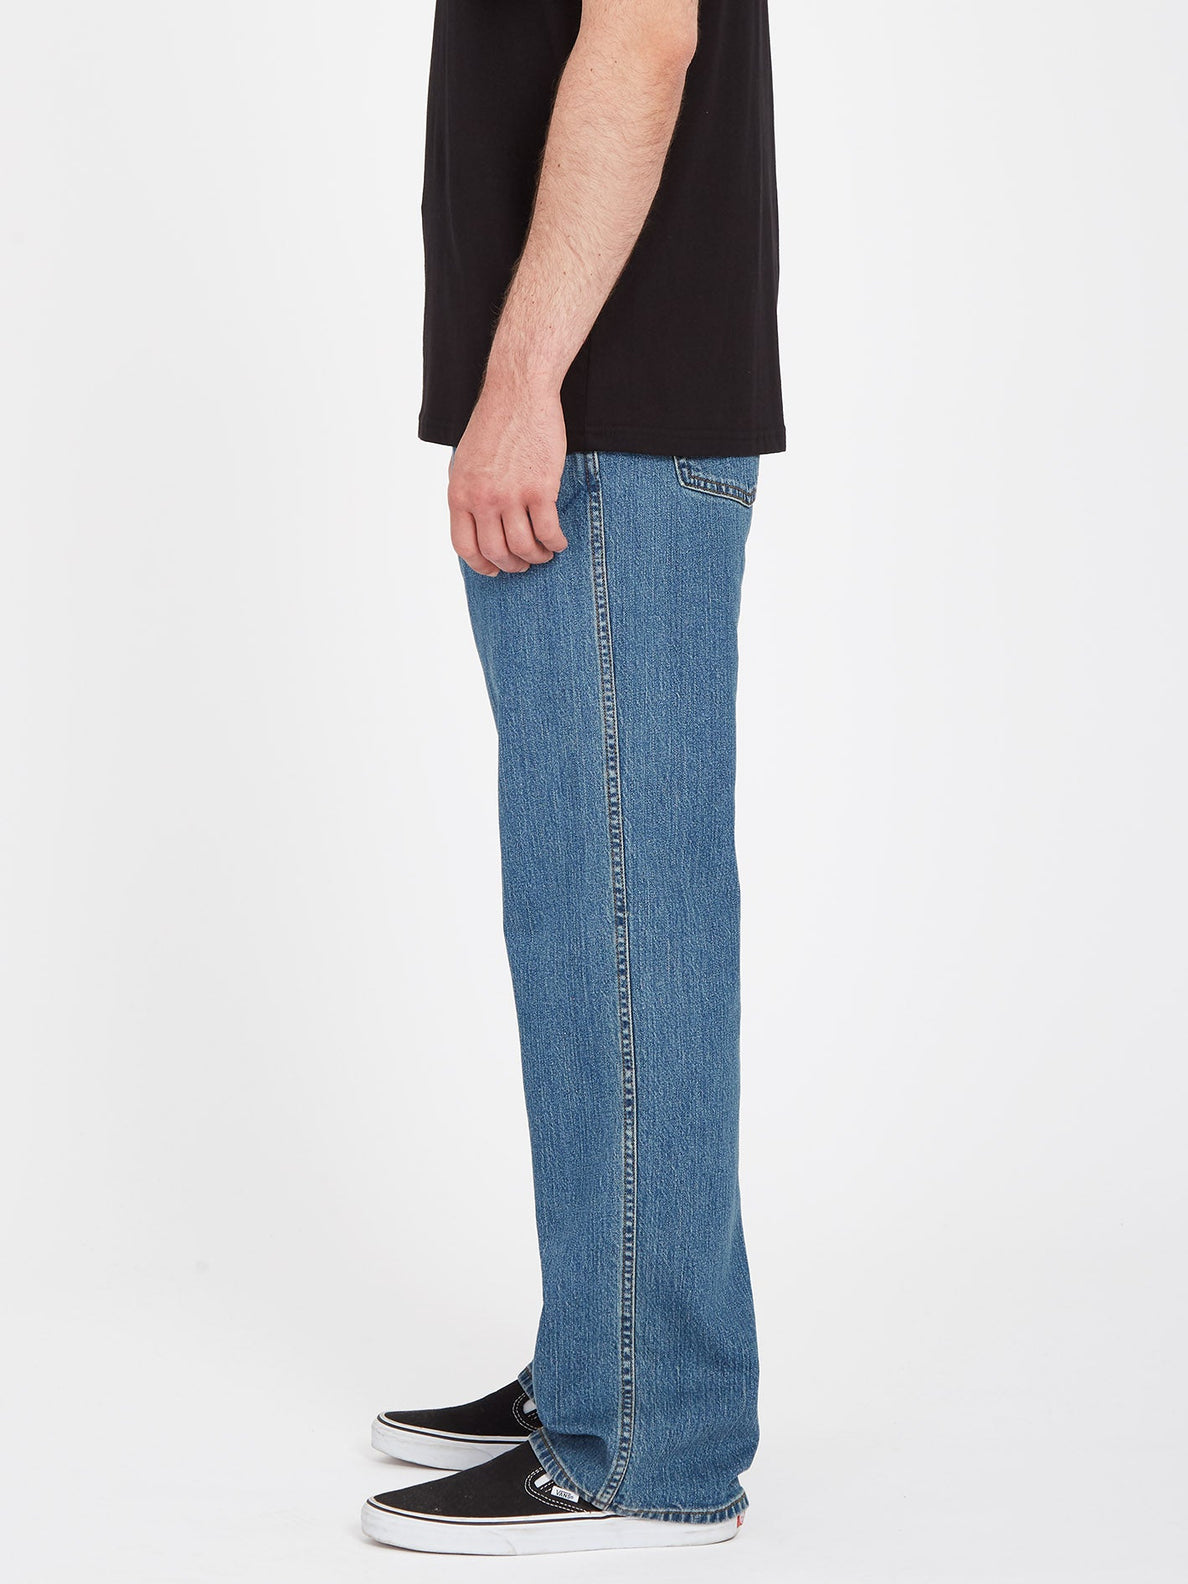 Modown Jeans - AGED INDIGO (A1931900_AIN) [3]